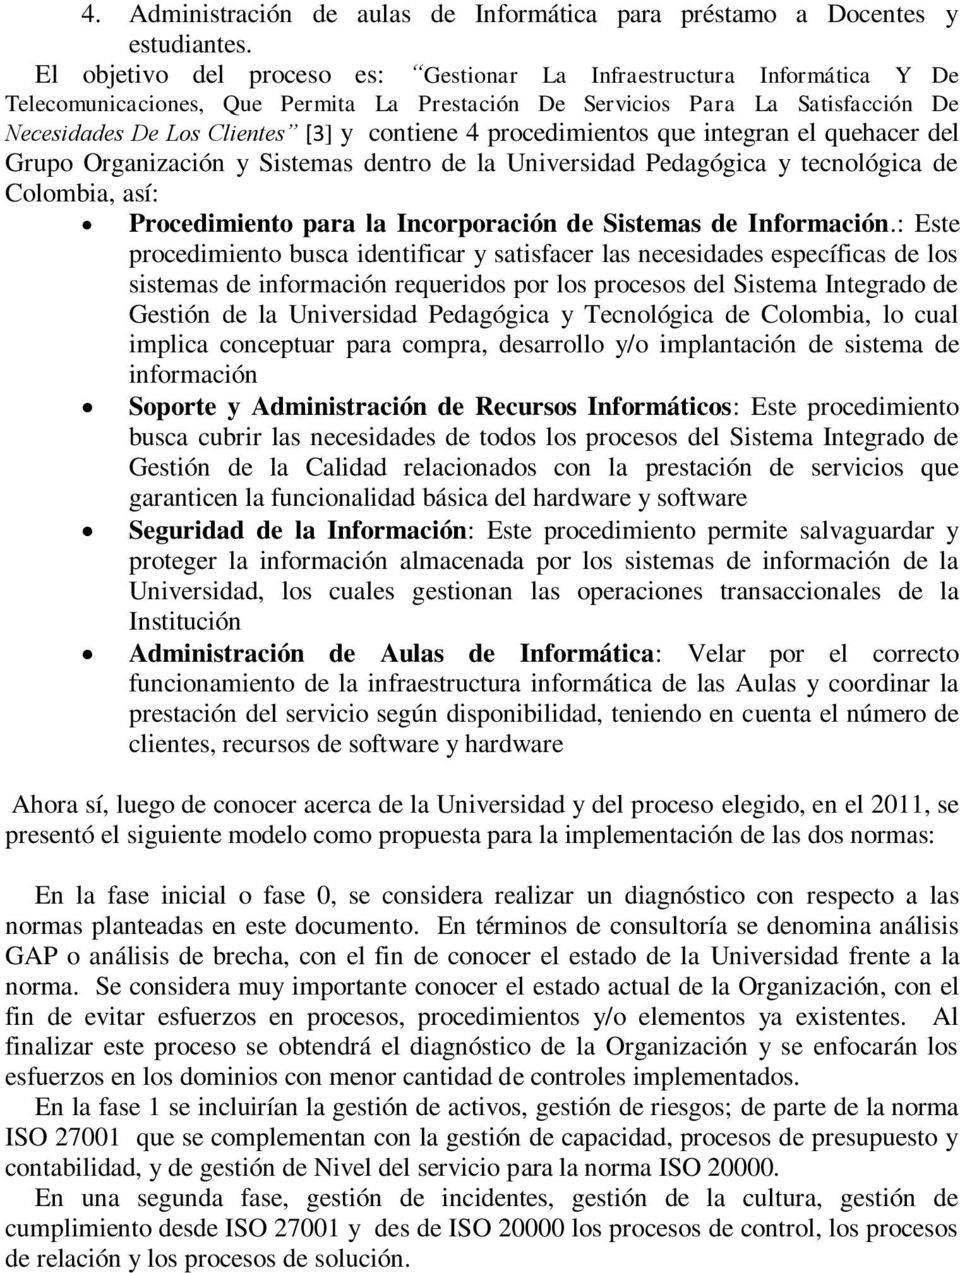 4 procedimientos que integran el quehacer del Grupo Organización y Sistemas dentro de la Universidad Pedagógica y tecnológica de Colombia, así: Procedimiento para la Incorporación de Sistemas de